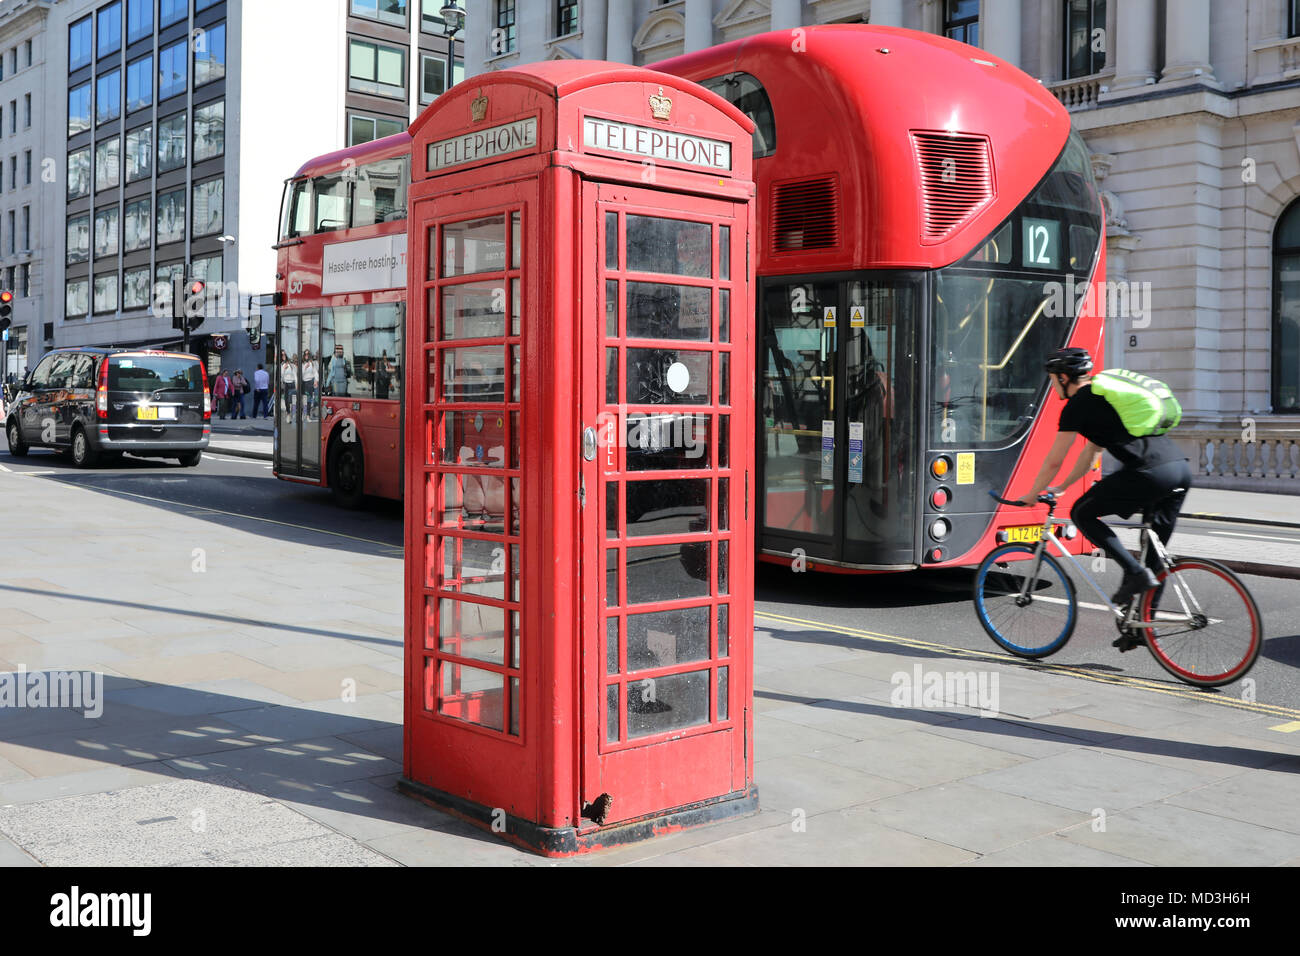 Londres, Royaume-Uni. 18 avril 2018. Une boîte de téléphone rouge sur Waterloo Place, centre de Londres, avec un rouge traditionnel et London bus passant par un cycliste, le 18 avril, 2018 Photo : Dominic Dudley/Alamy Live News Banque D'Images